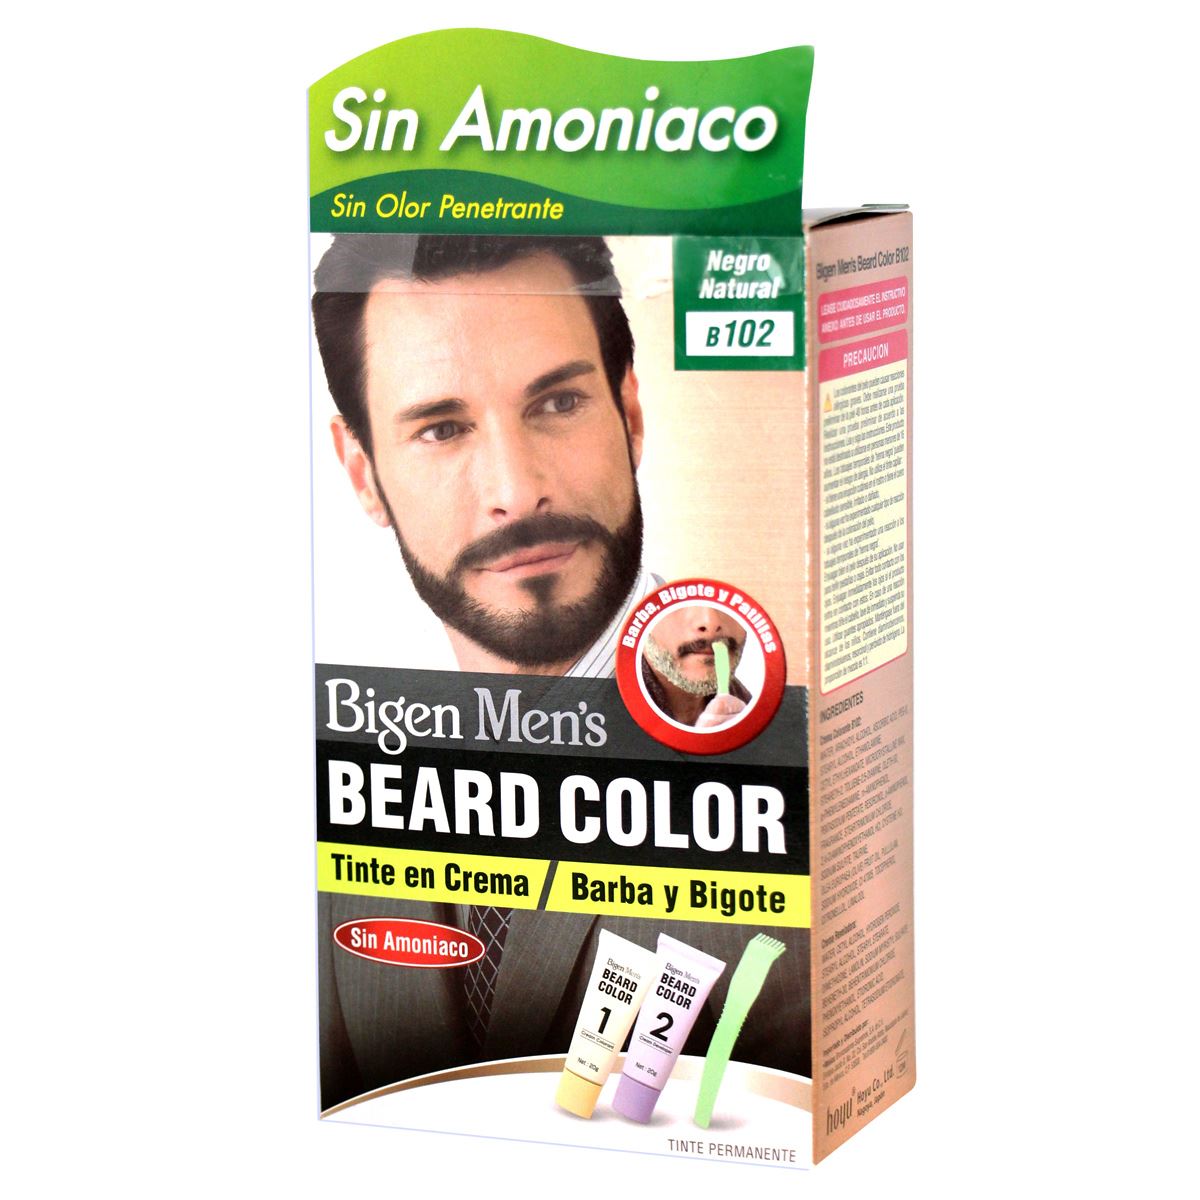 Fácil de comprender boicotear recibir Bigen Coloración para Barba y Bigote color Negro Natural